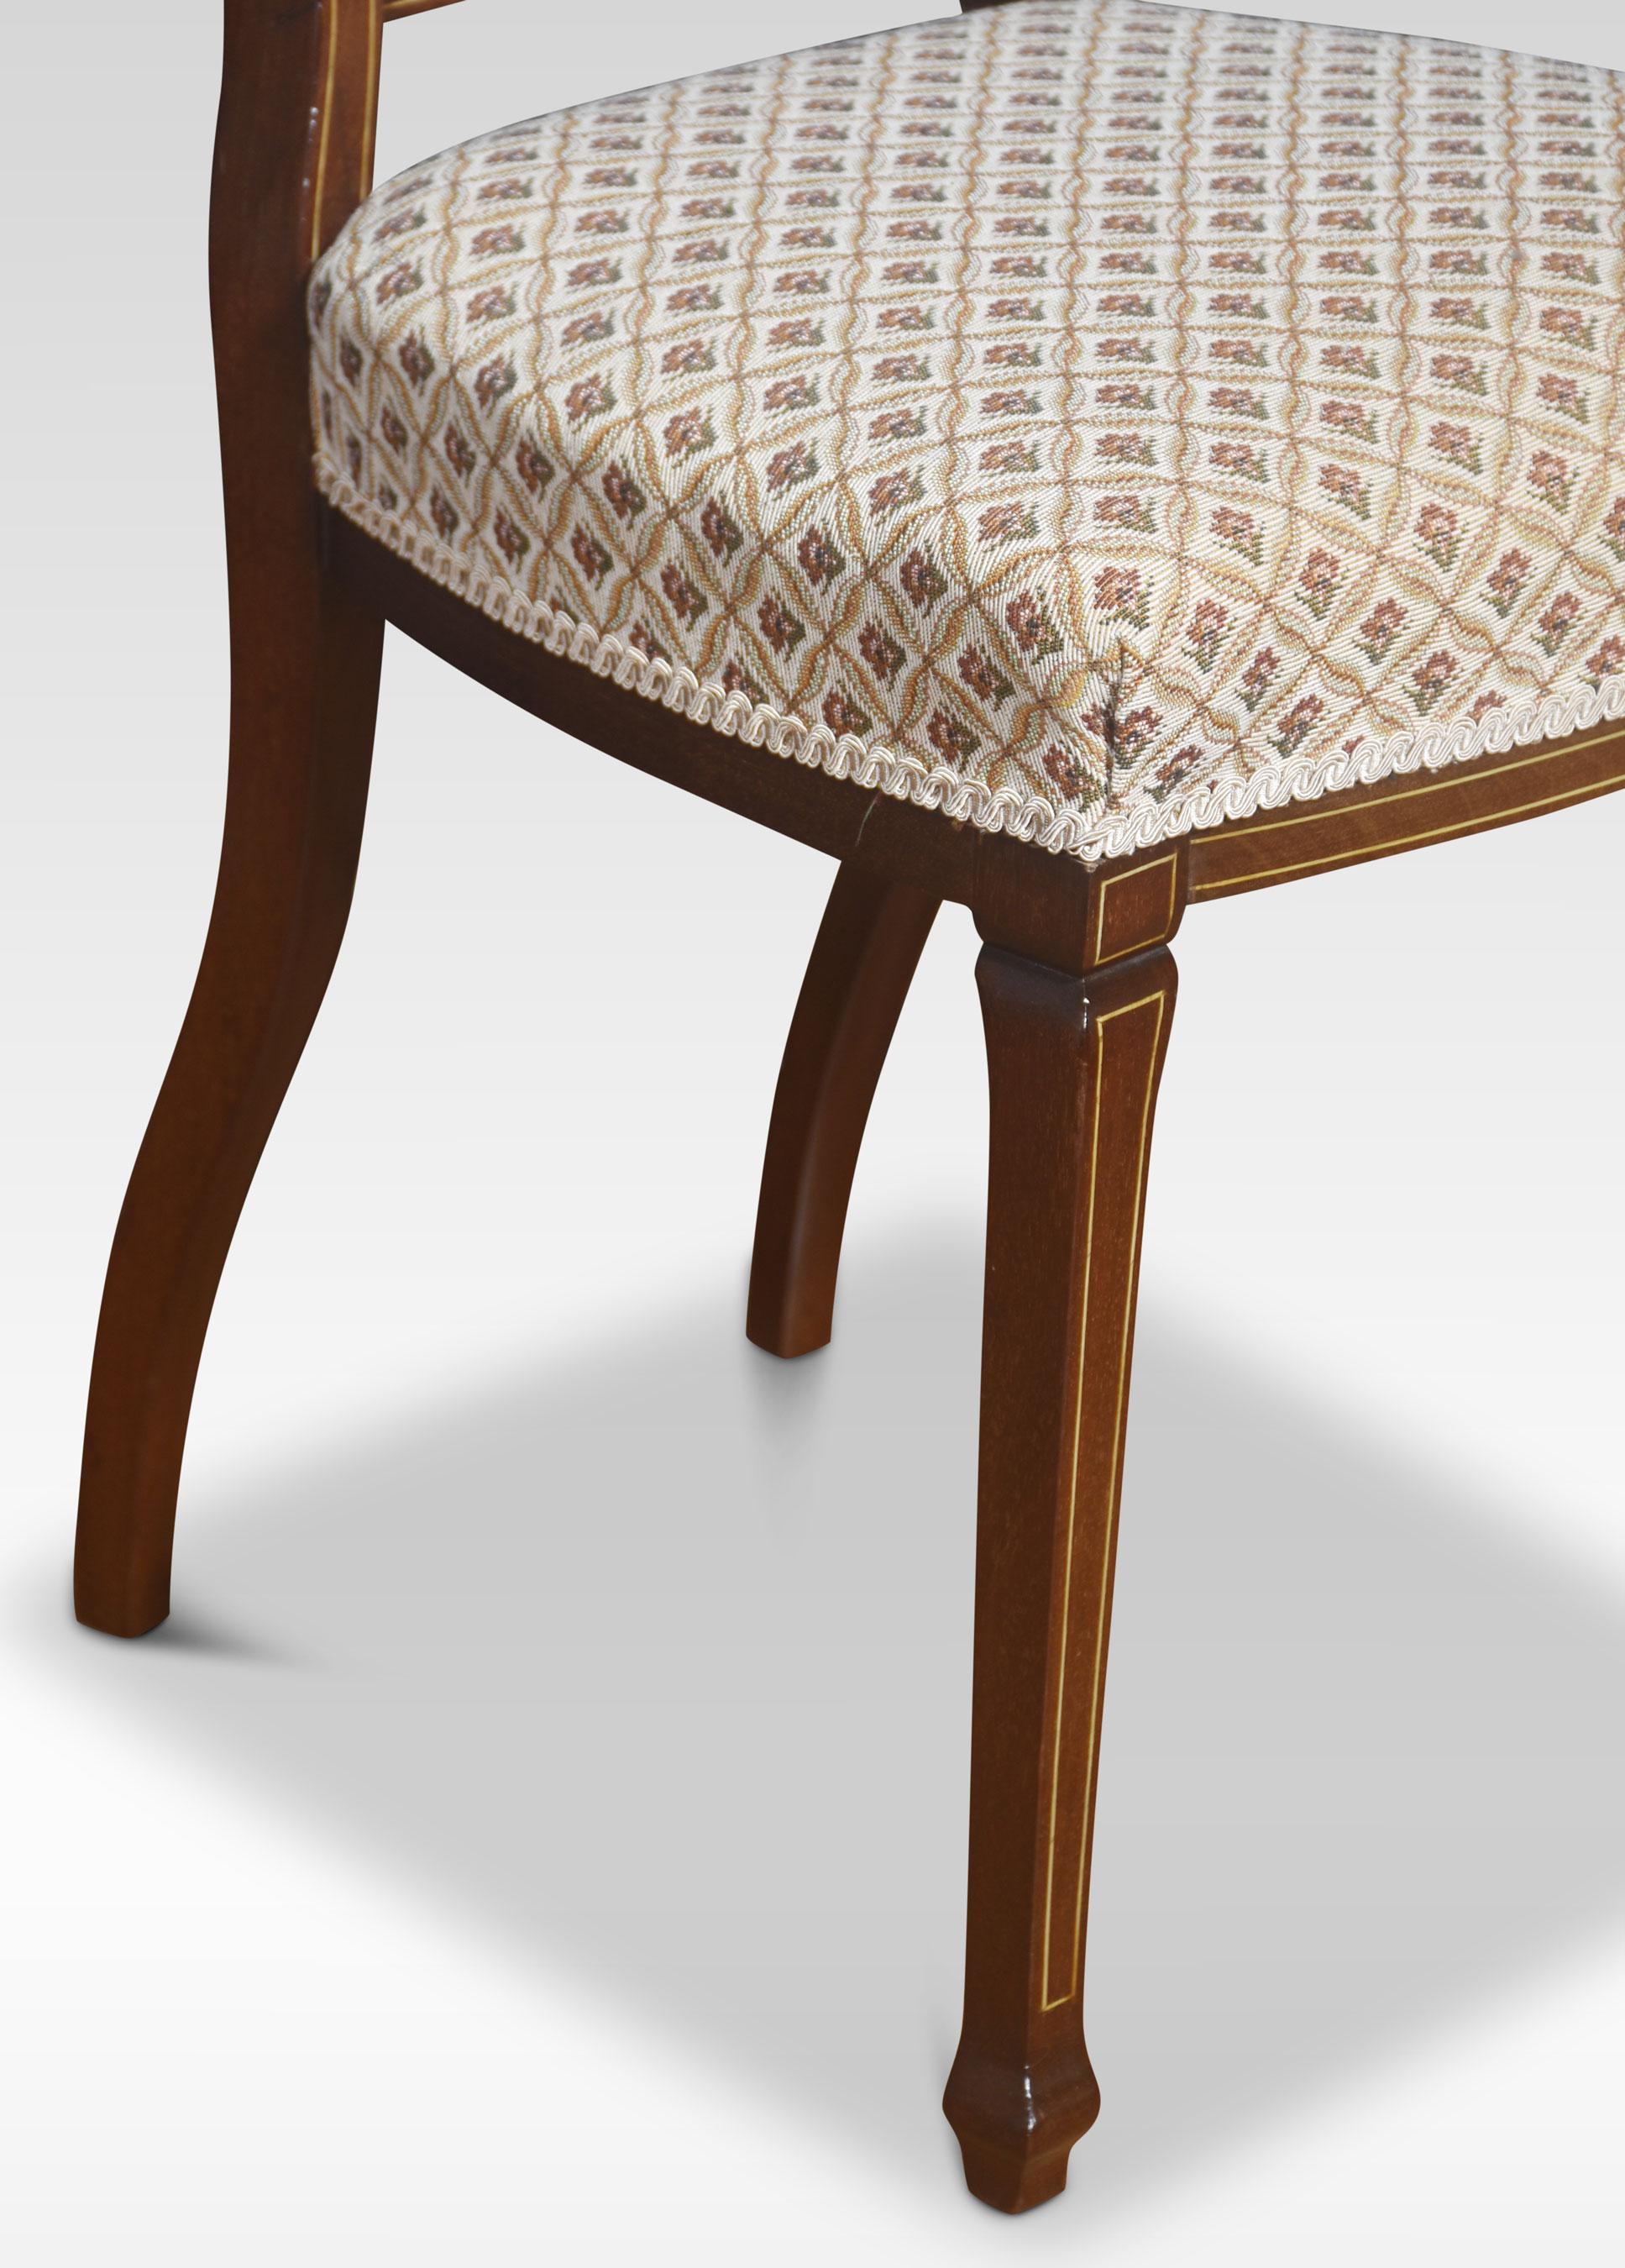 Ein Paar Stühle aus Mahagoni mit Intarsien. Er hat eine geformte Rückenlehne mit feinen Intarsien und eine Einlegearbeit über dem gepolsterten Sitz. Gestützt auf schlanke, sich verjüngende Stützen.
Abmessungen
Höhe 36 Zoll Höhe zum Sitz 19,5